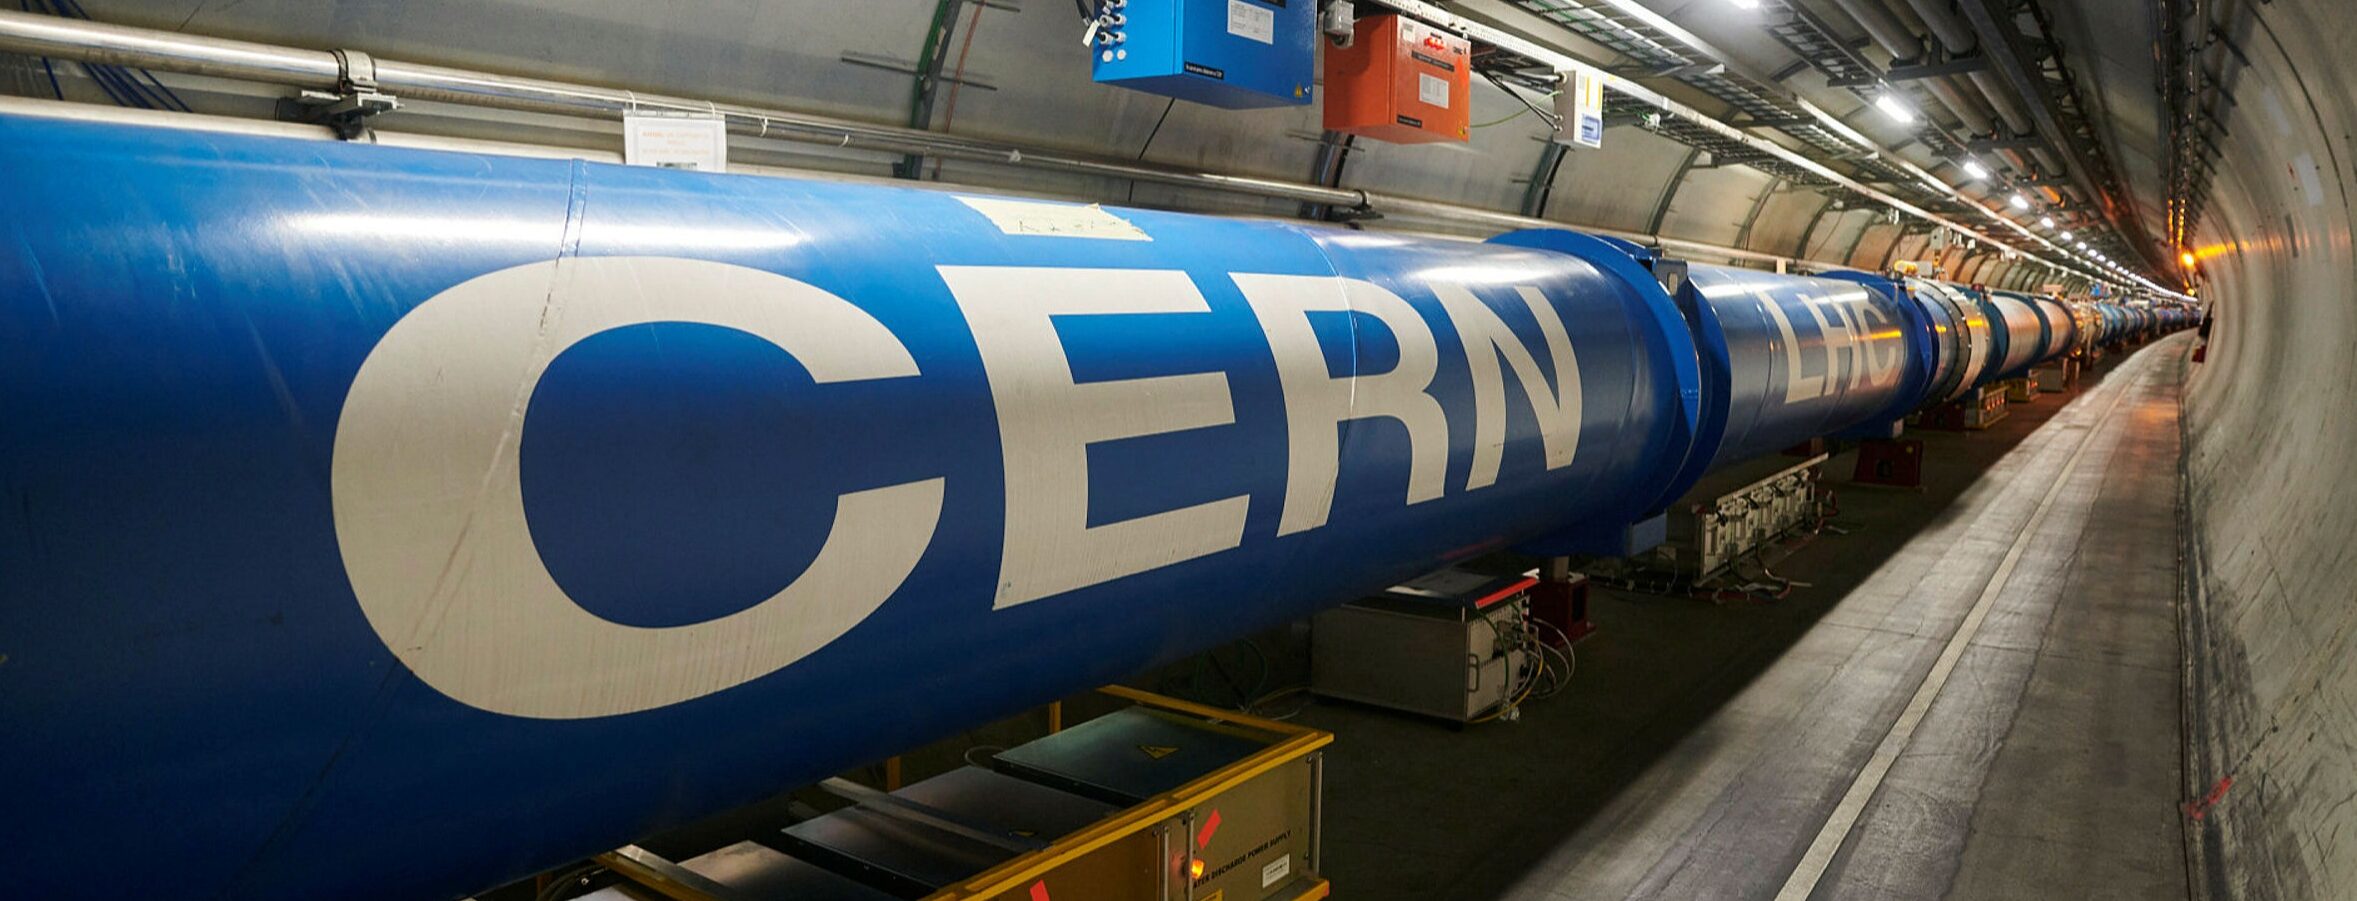 Εμπειρίες από το CERN…